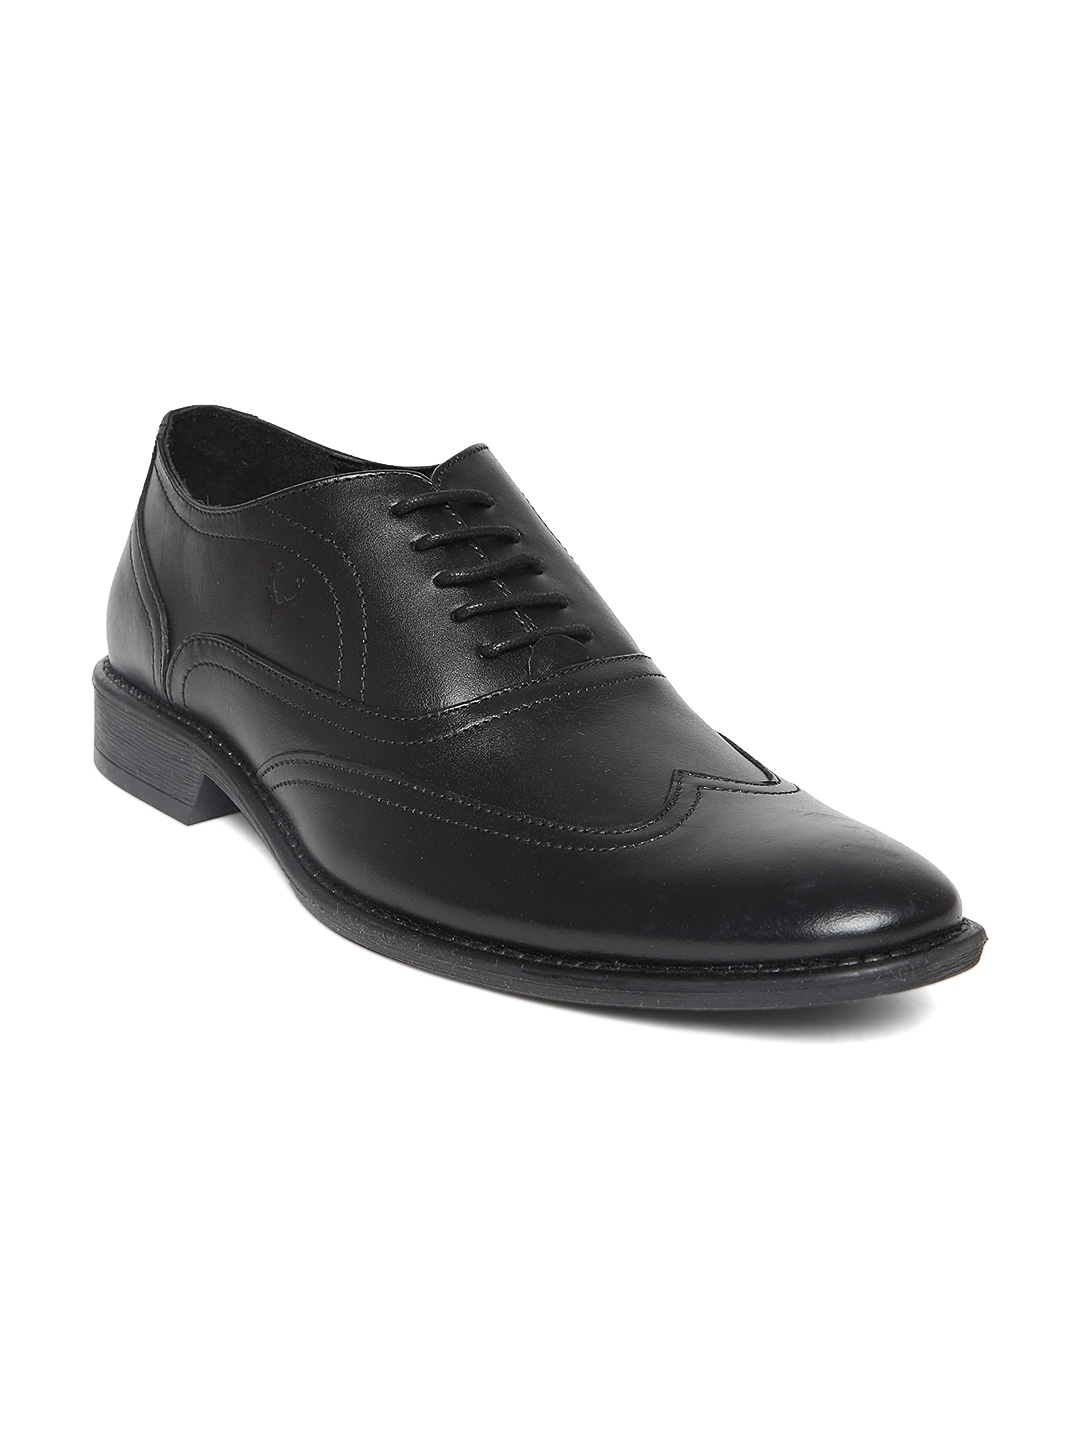 Buy Allen Solly Men Black Leather Formal Shoes - Formal Shoes for Men ...